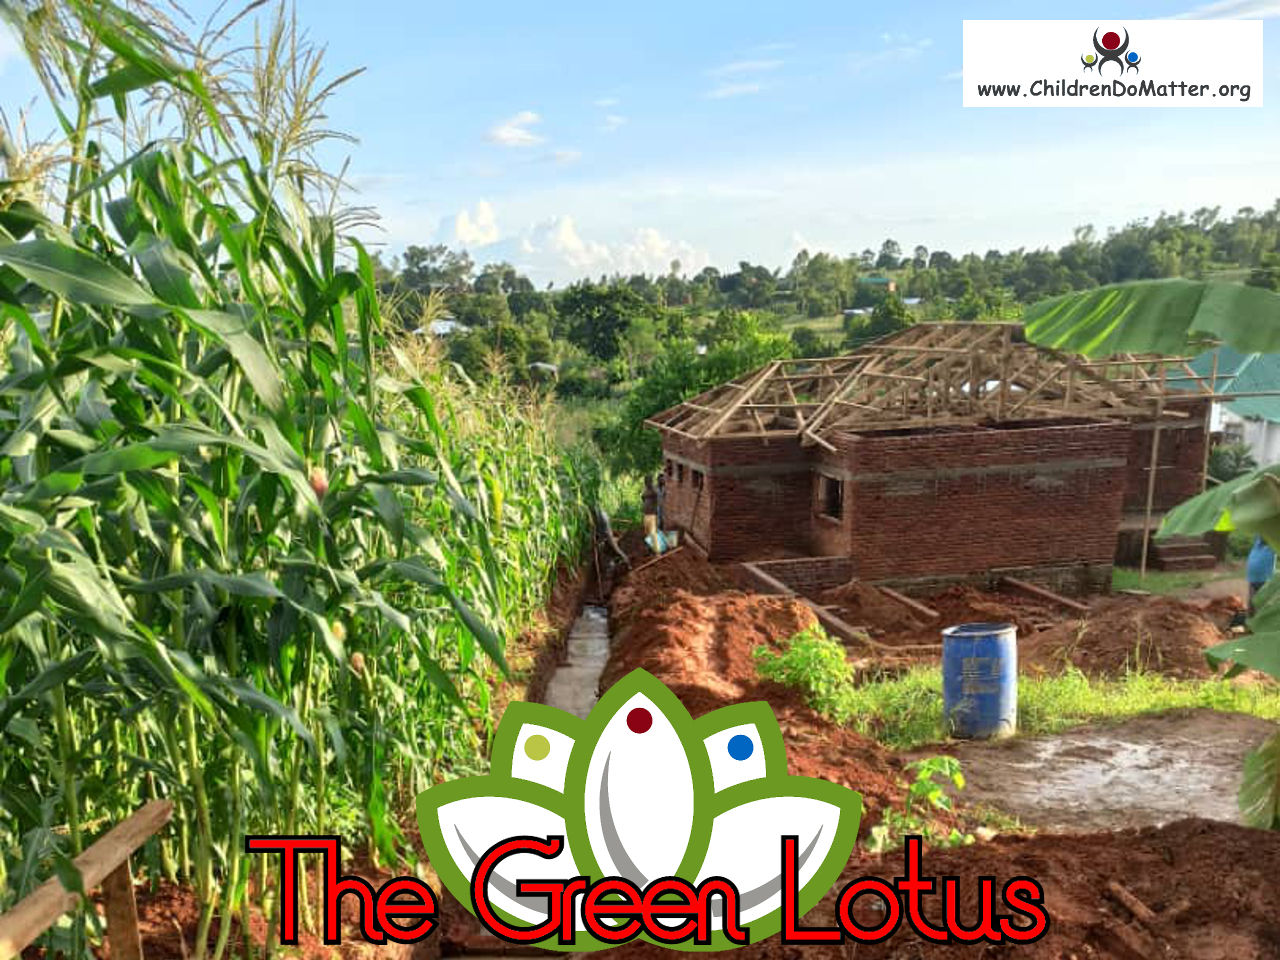 costruzione dell'orfanotrofio casa di accoglienza the green lotus a blantyre malawi - children do matter - 19